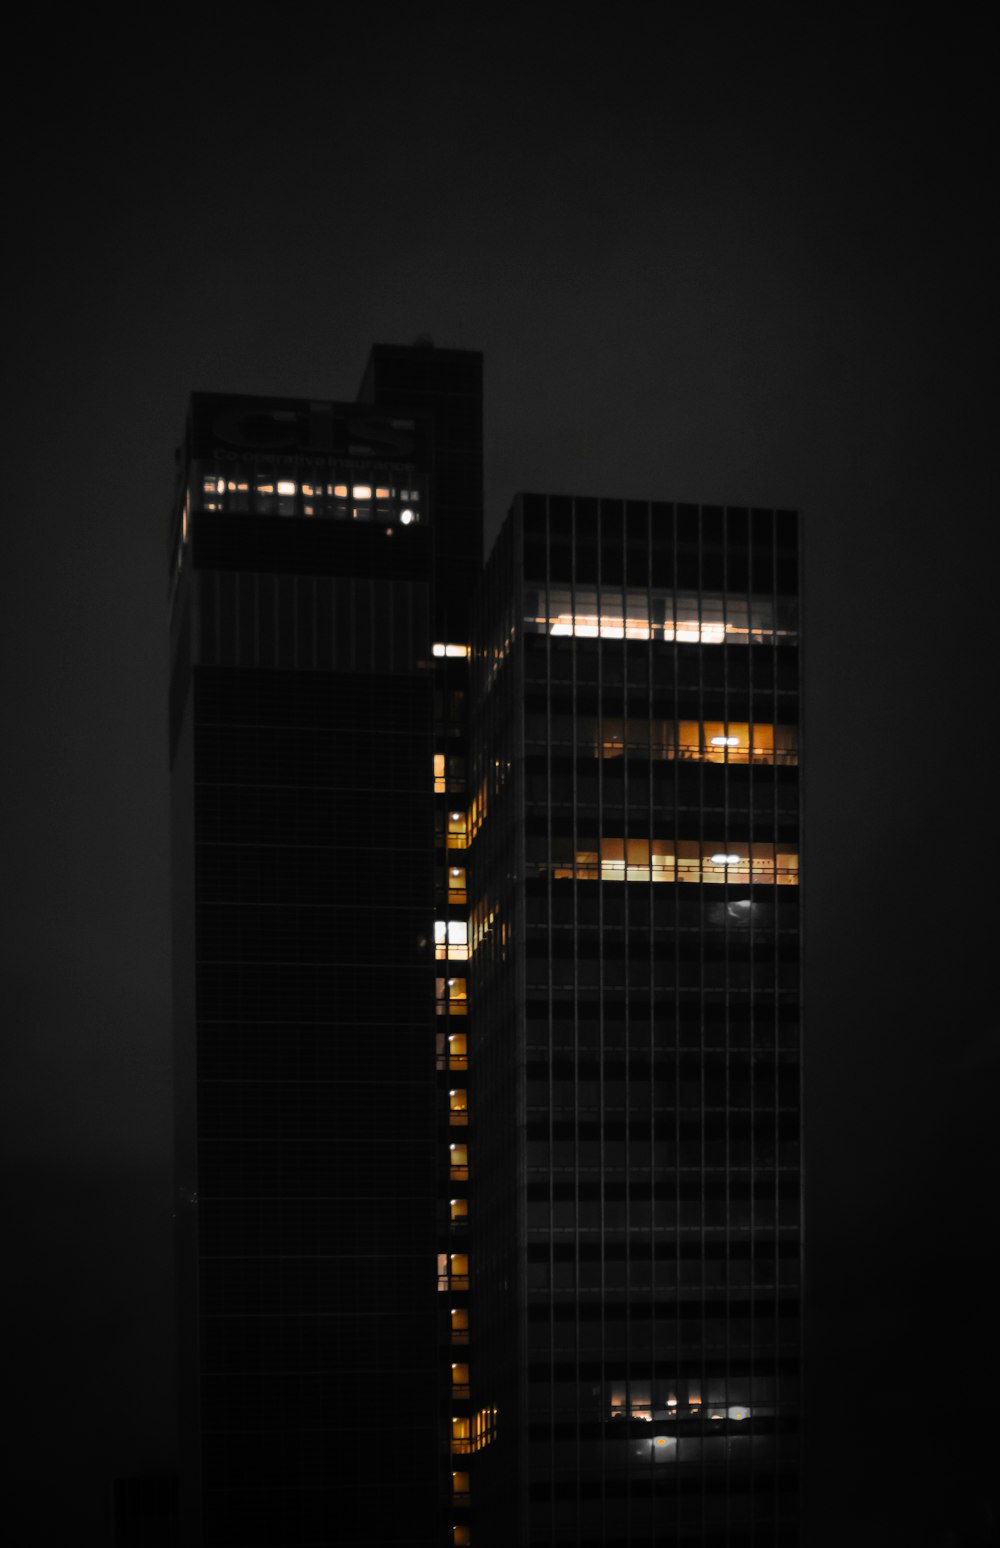 야간에 조명이 켜진 건물